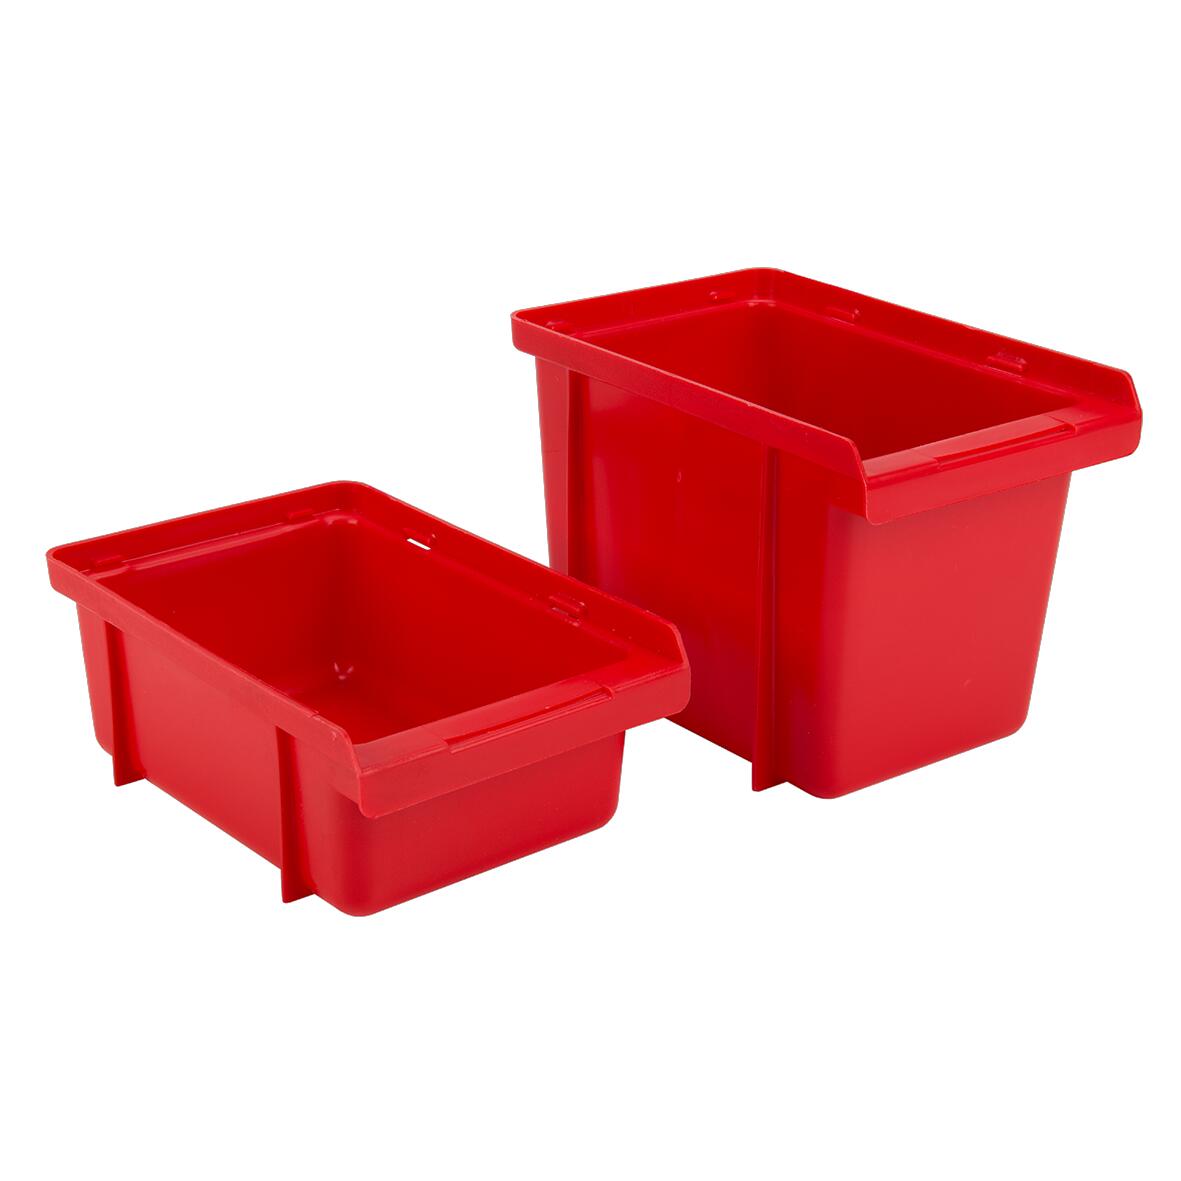 Helia - Verpakking, sorteerbox rood 184 x 124 x 73 mm - 1001